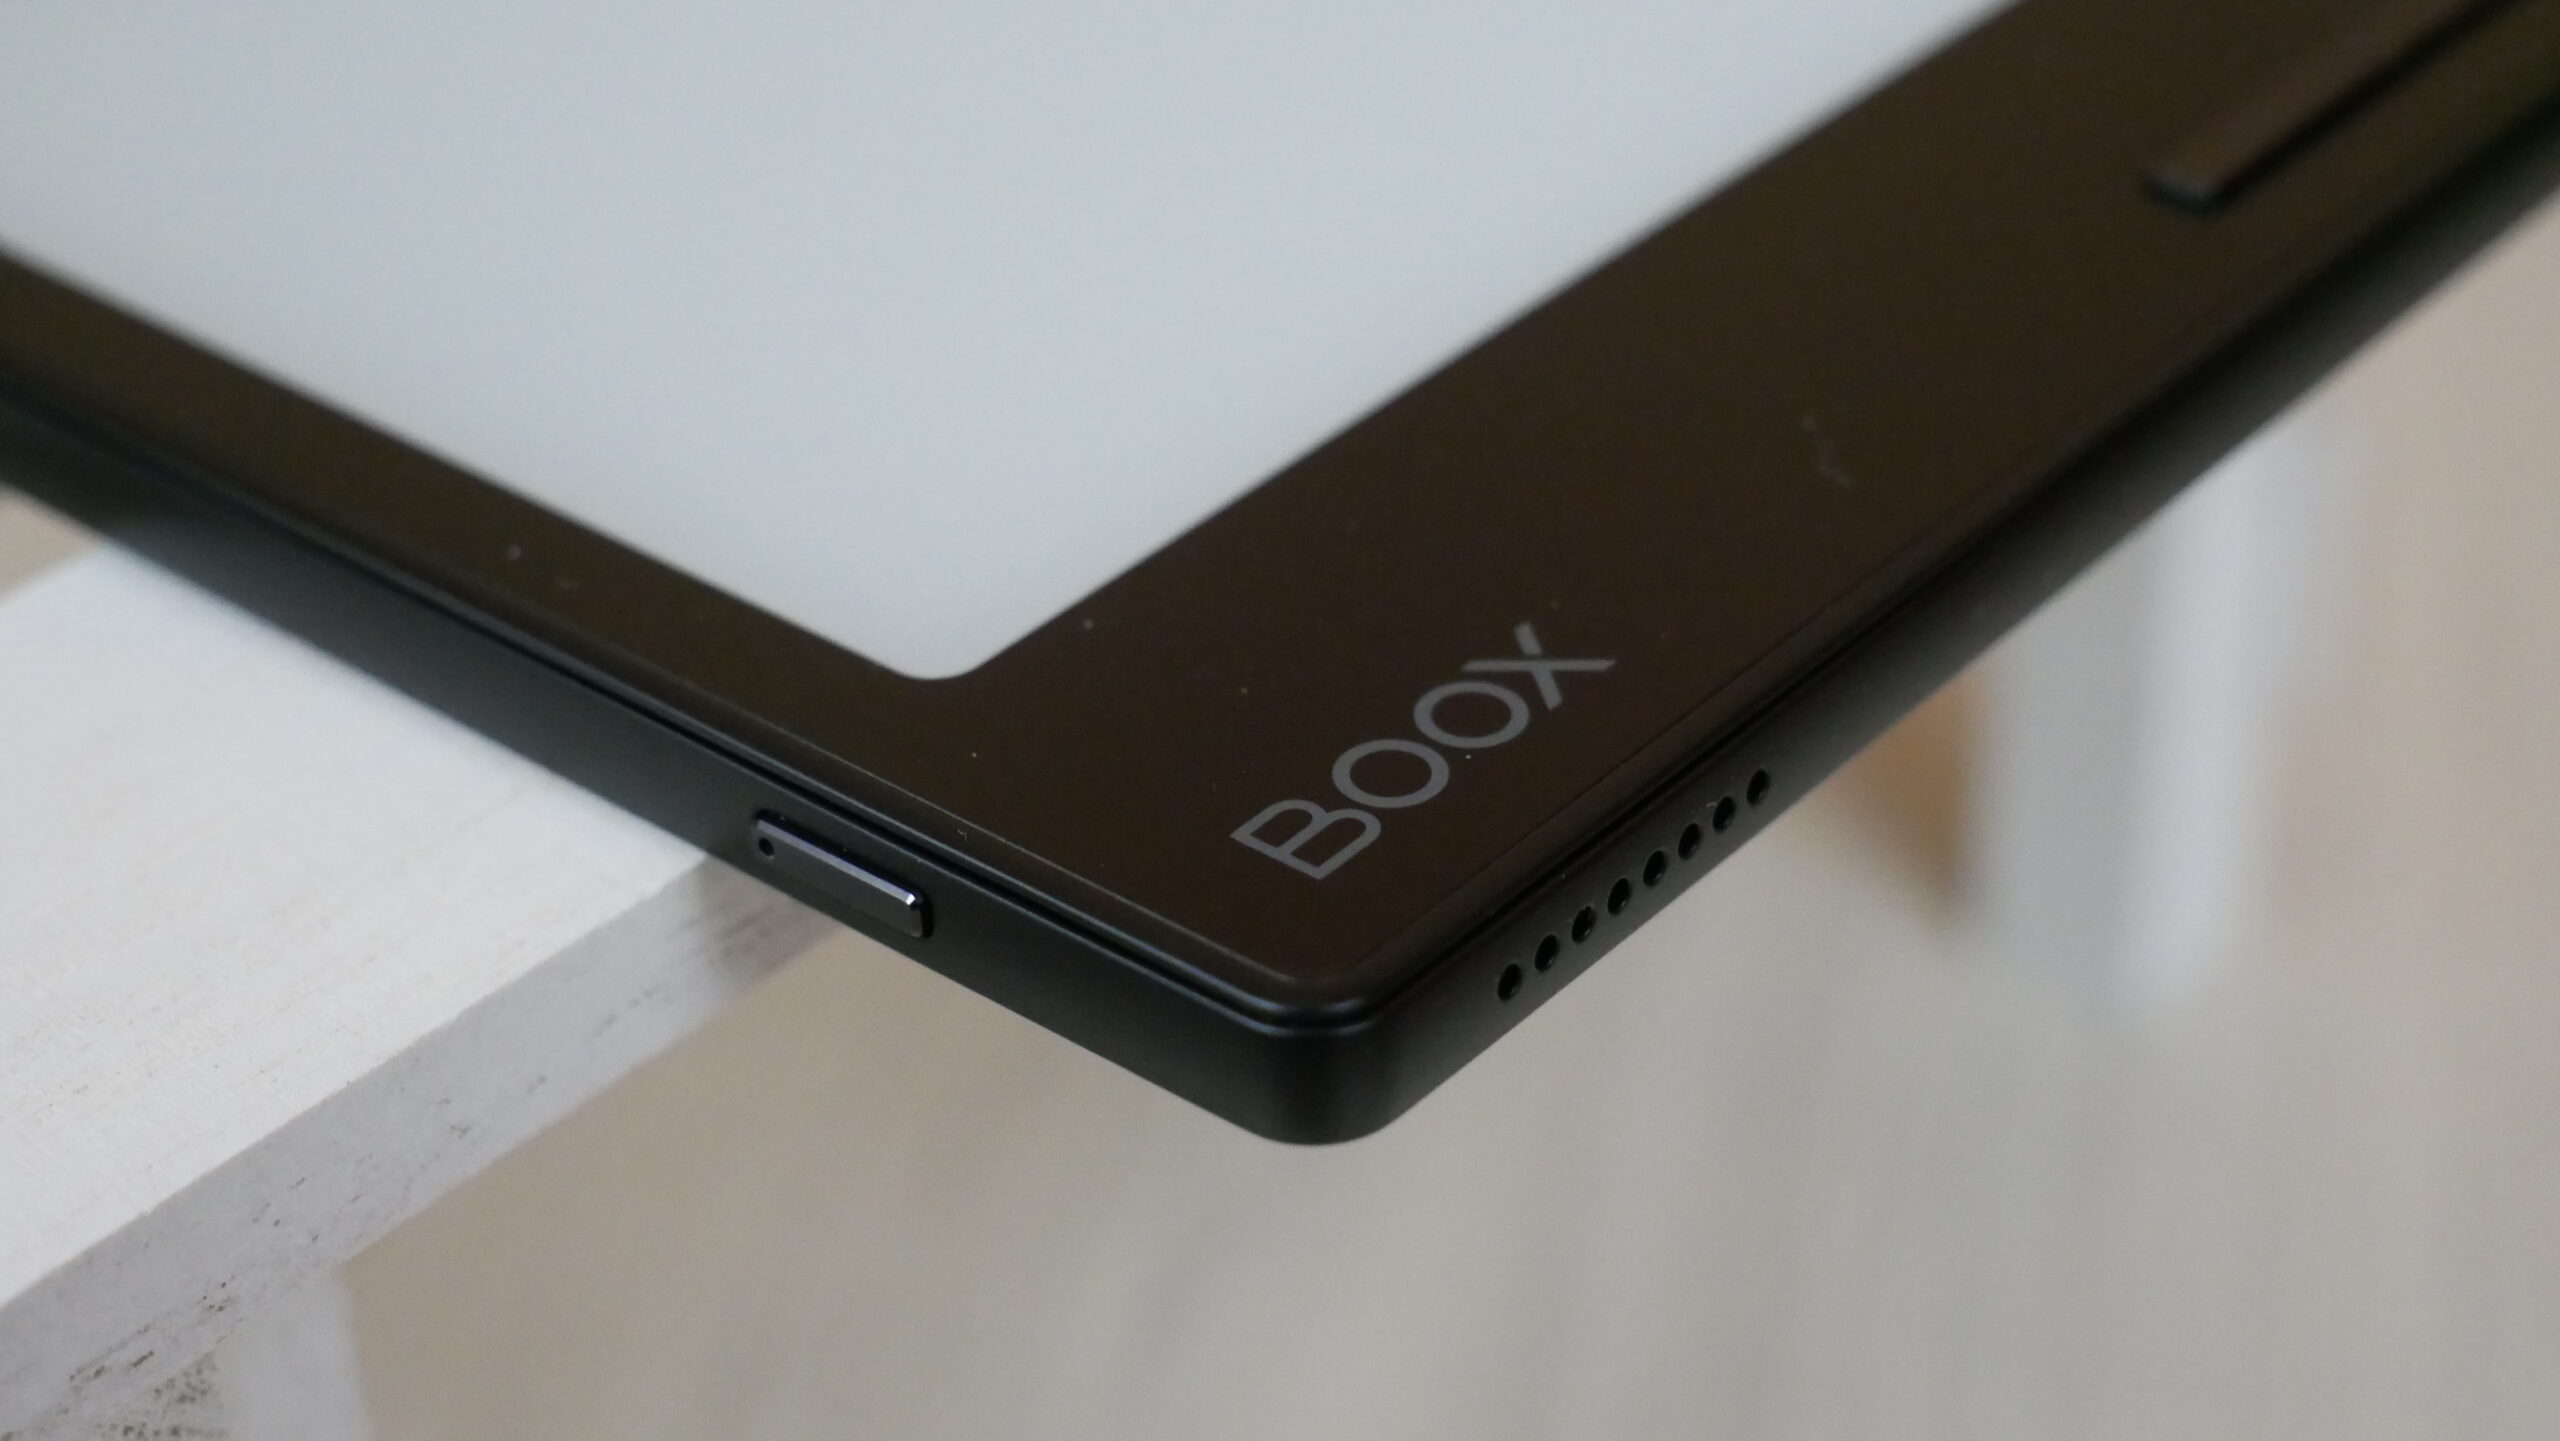 Onyx Boox Leaf 2 e-Reader Review - Good e-Reader